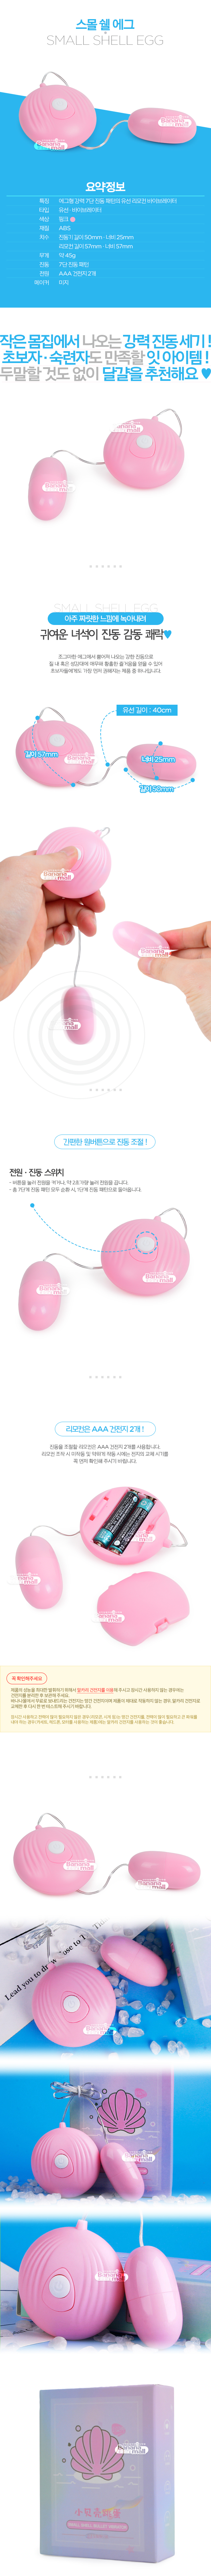 [7단 진동] 스몰 쉘 에그(Small Shell Egg)